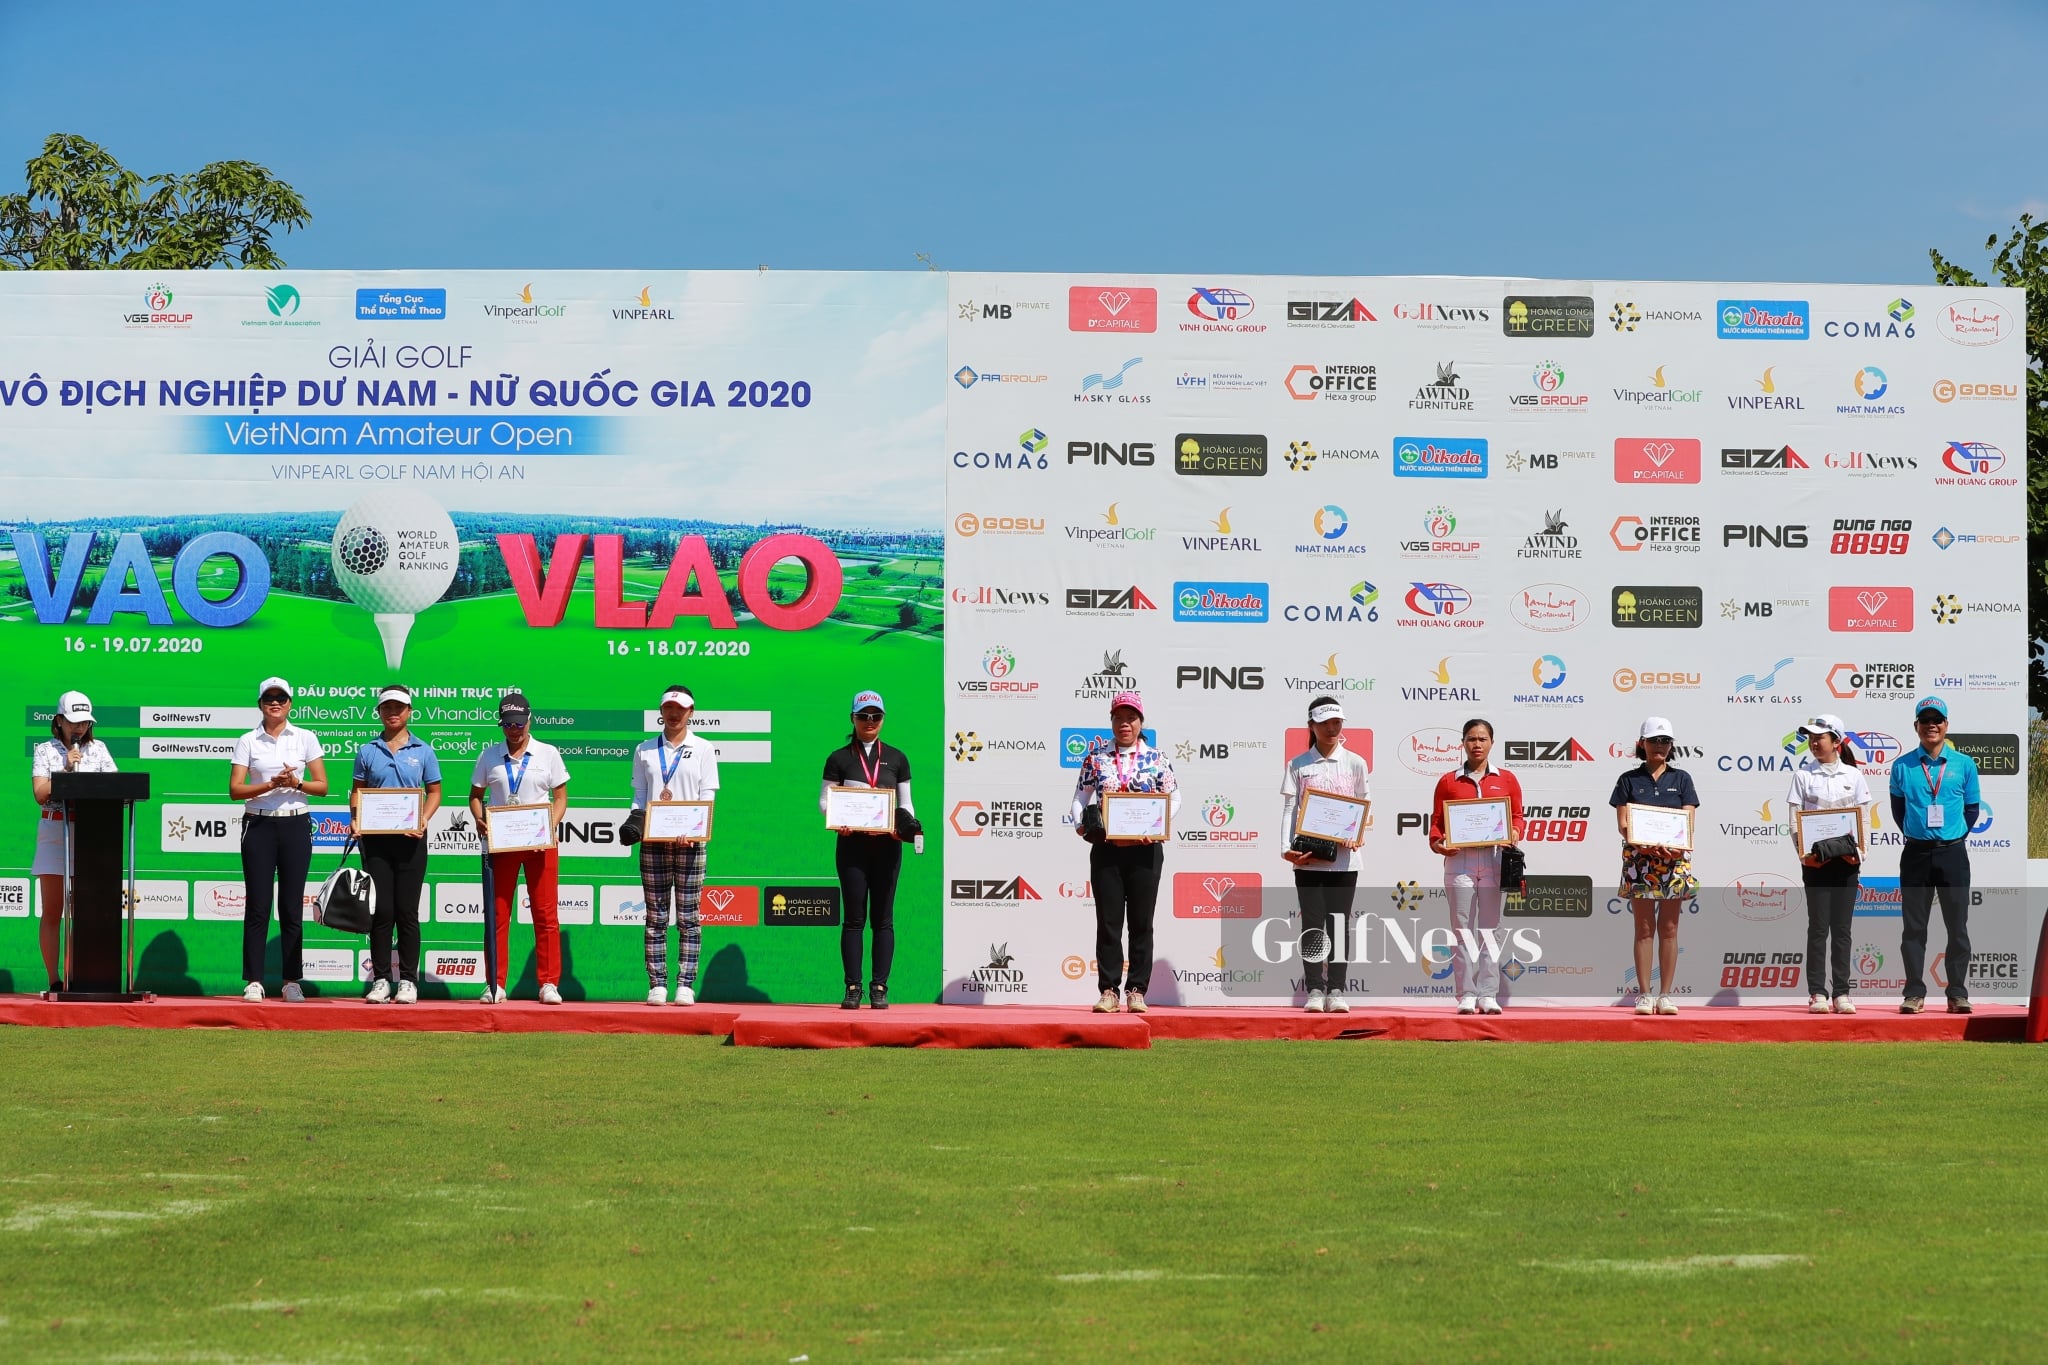 Hiệp hội Golf Việt Nam hoãn 3 giải Vô địch Nghiệp dư Quốc gia trong tháng 7